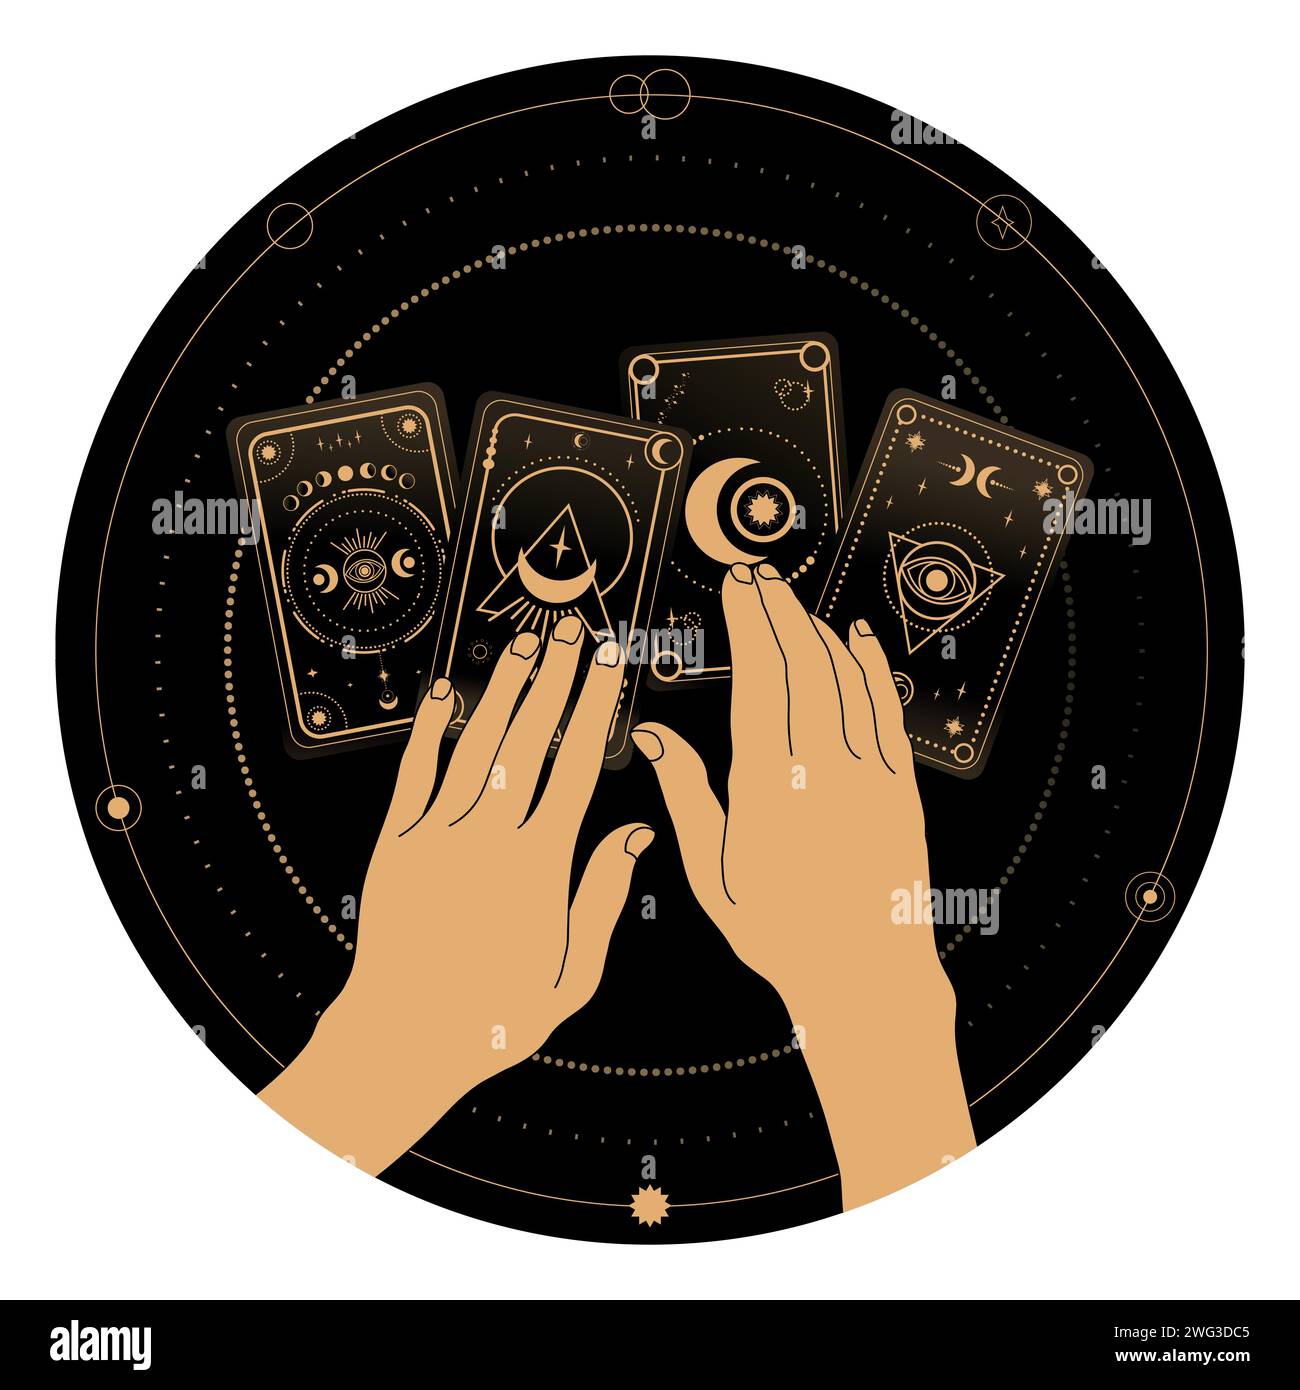 Wahrsagung mit Tarot-Symbolik. Frauenhände und Tarotkarten. Rätsel, Astrologie, Esoterik Stock Vektor